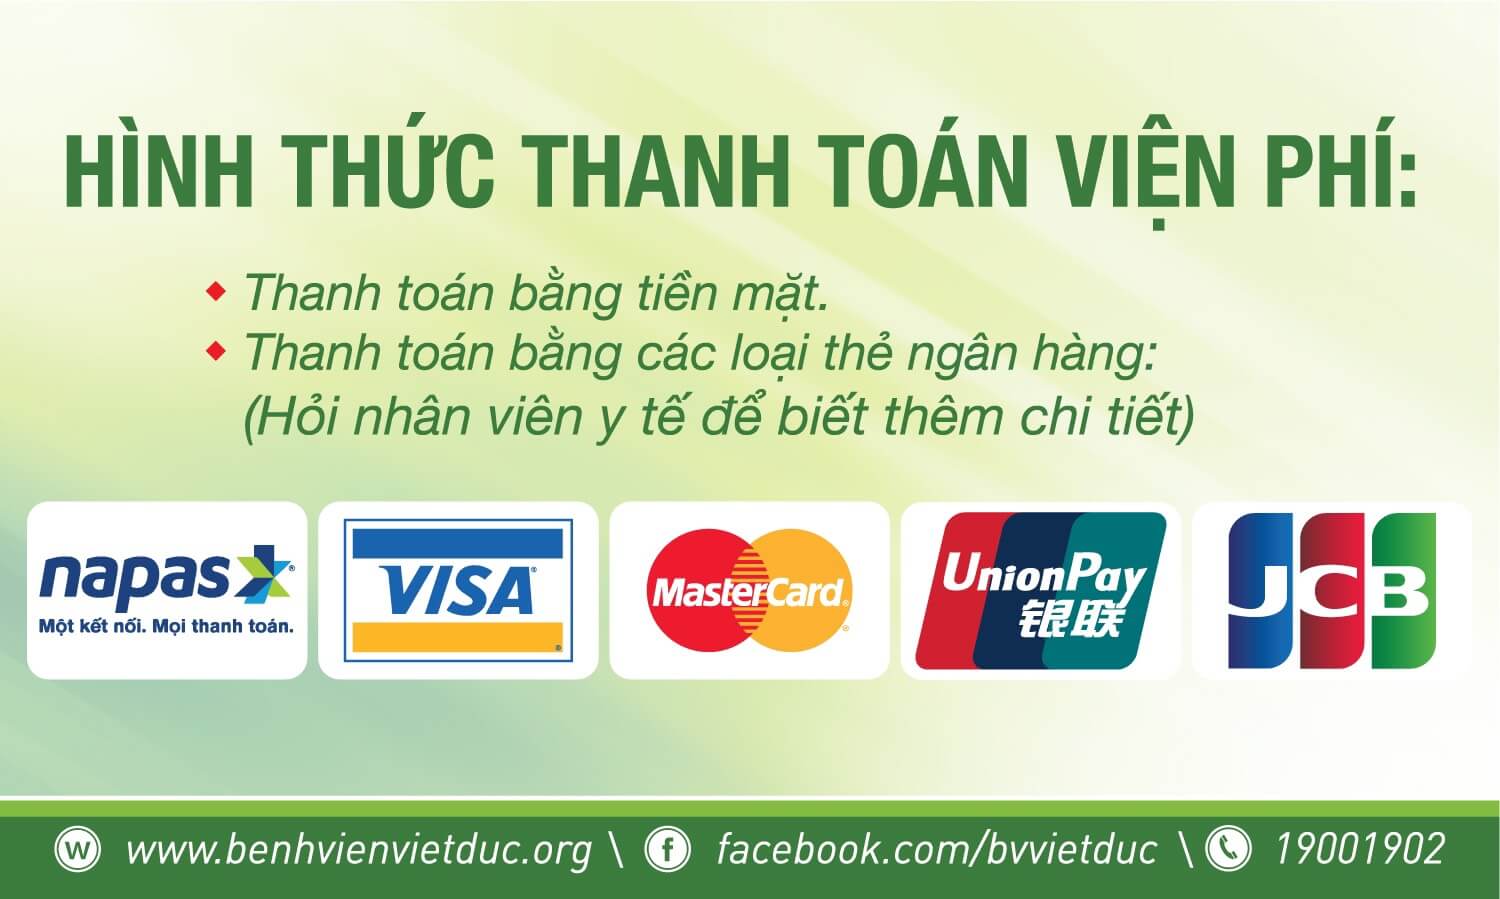 Các hình thức thanh toán tại bV Việt Đức